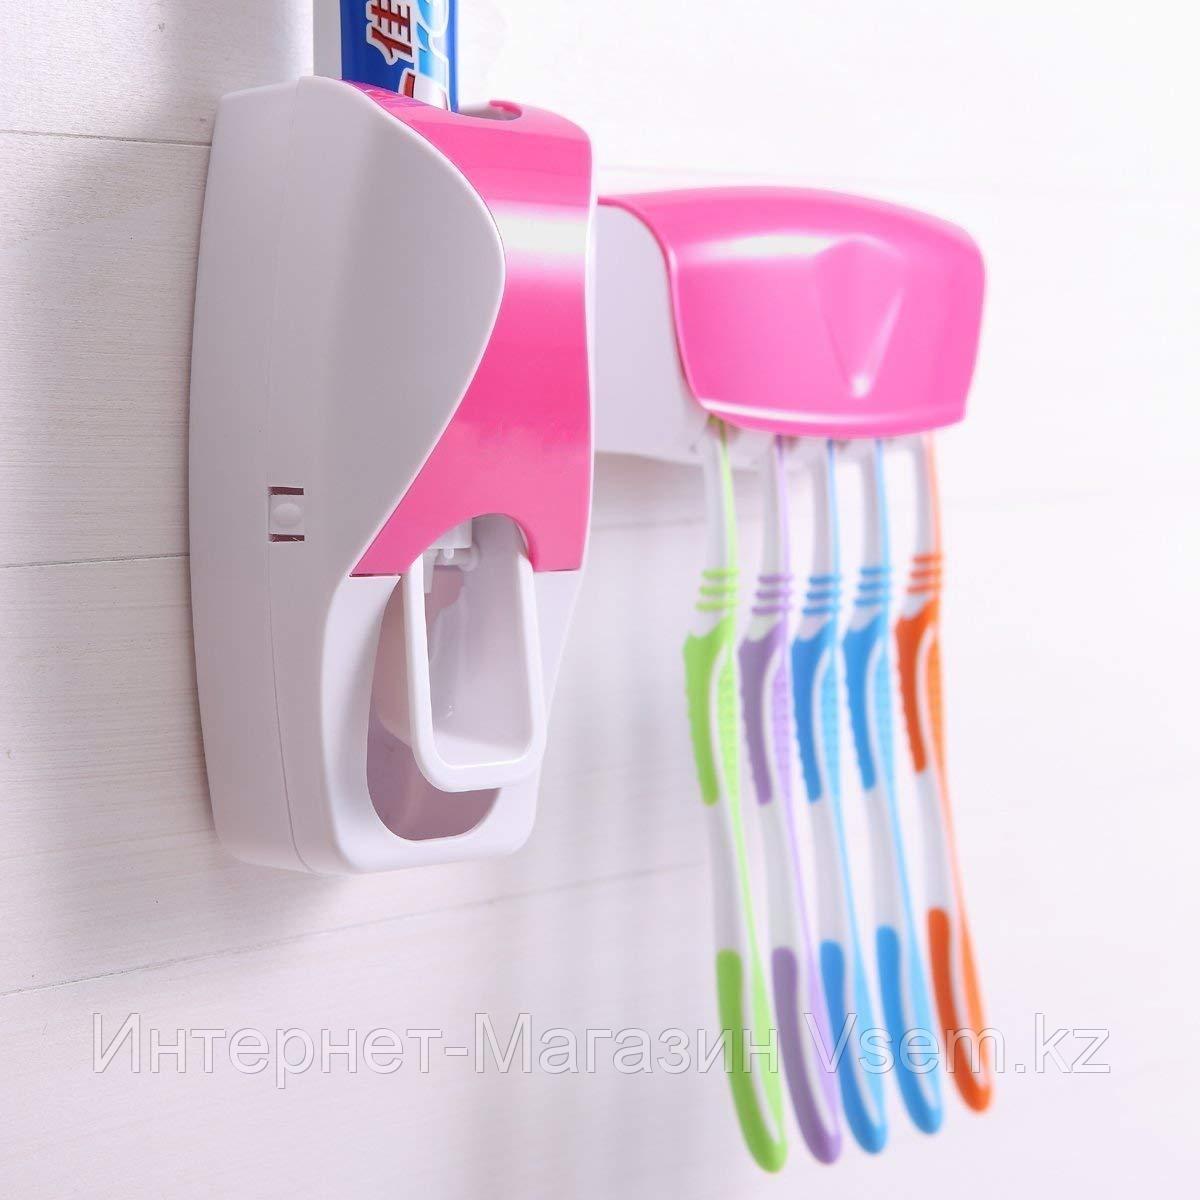 Дозатор для зубной пасты с держателем для щеток, цвет розовый + белый